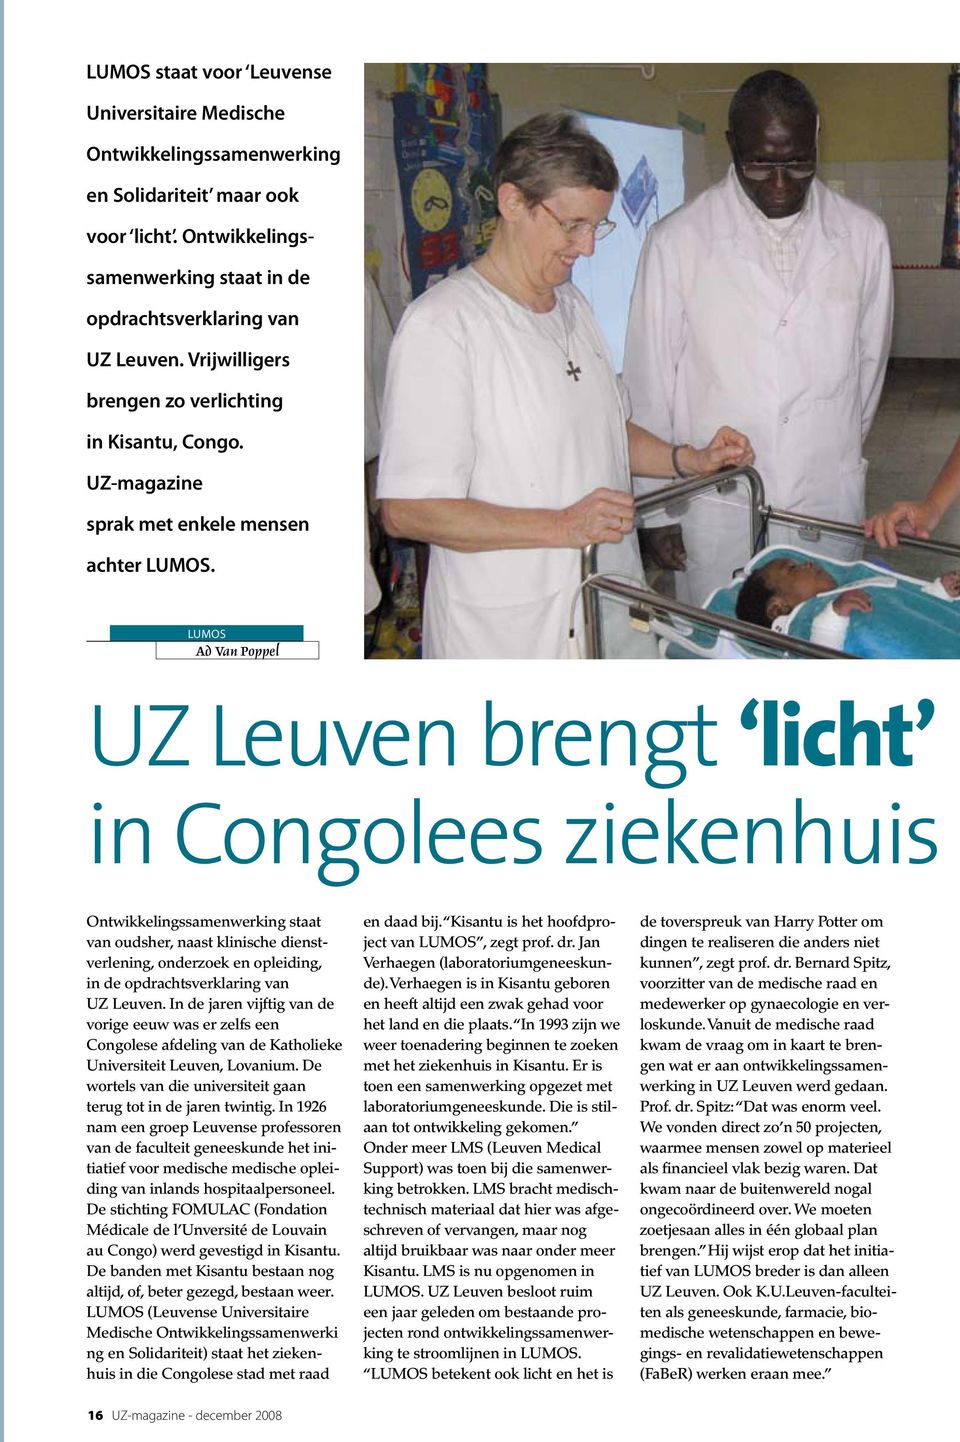 LUMOS Ad Van Poppel UZ Leuven brengt licht in Congolees ziekenhuis Ontwikkelingssamenwerking staat van oudsher, naast klinische dienstverlening, onderzoek en opleiding, in de opdrachtsverklaring van